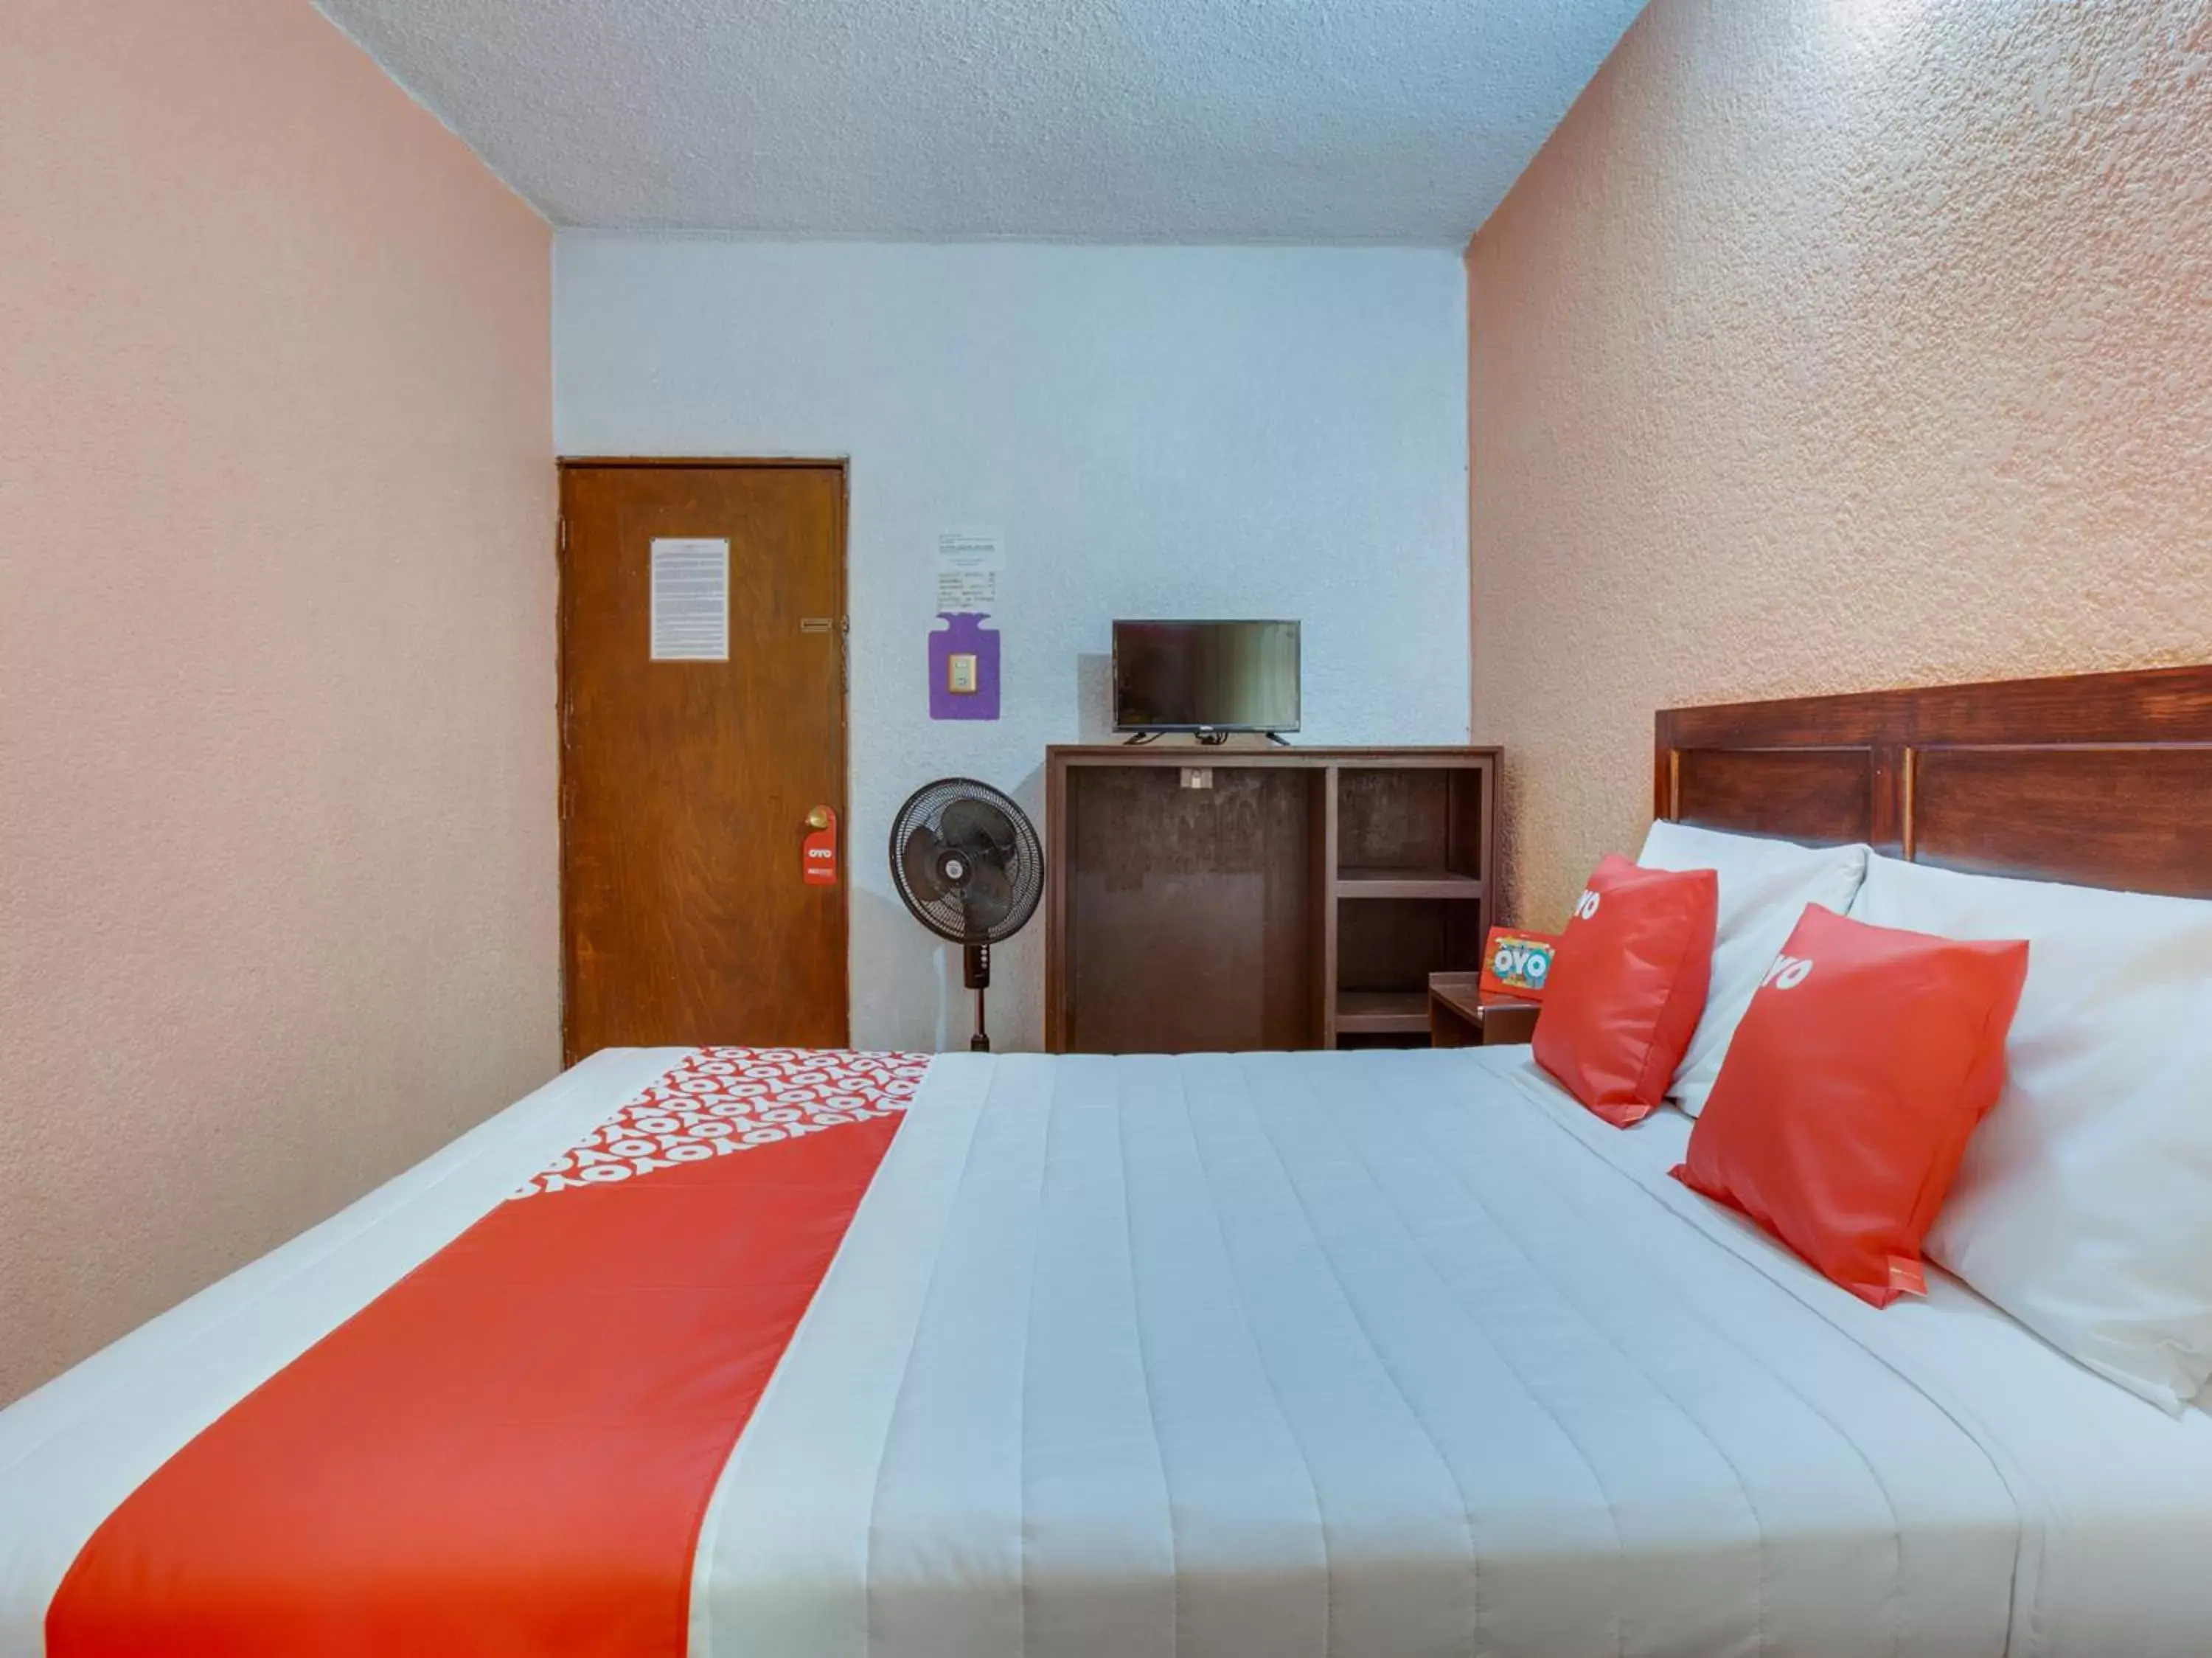 Bedroom in OYO Hotel Huautla, Oaxaca